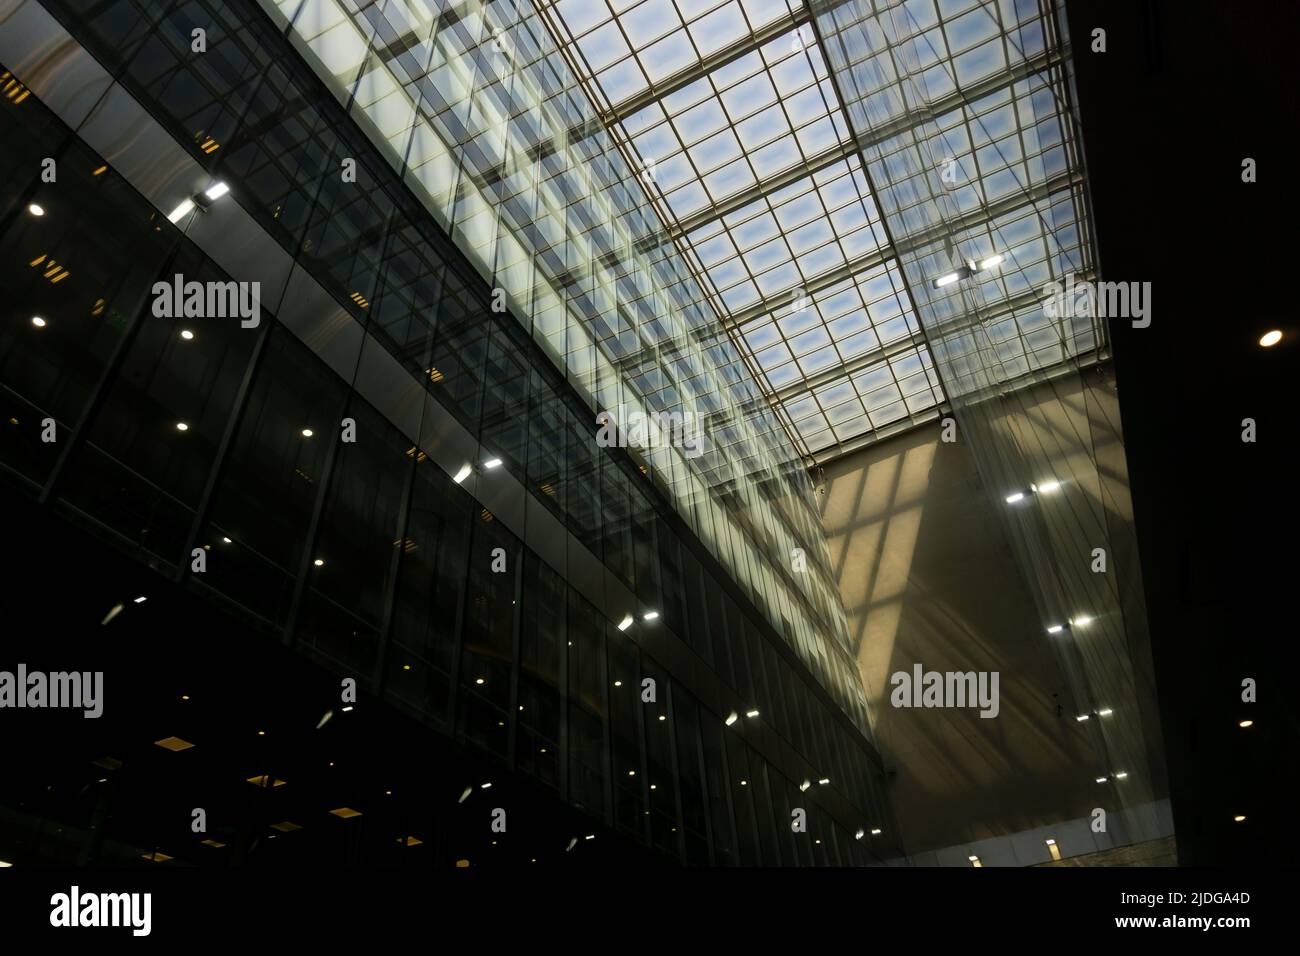 Plafond en verre avec répétition de lumières, en perspective Banque D'Images